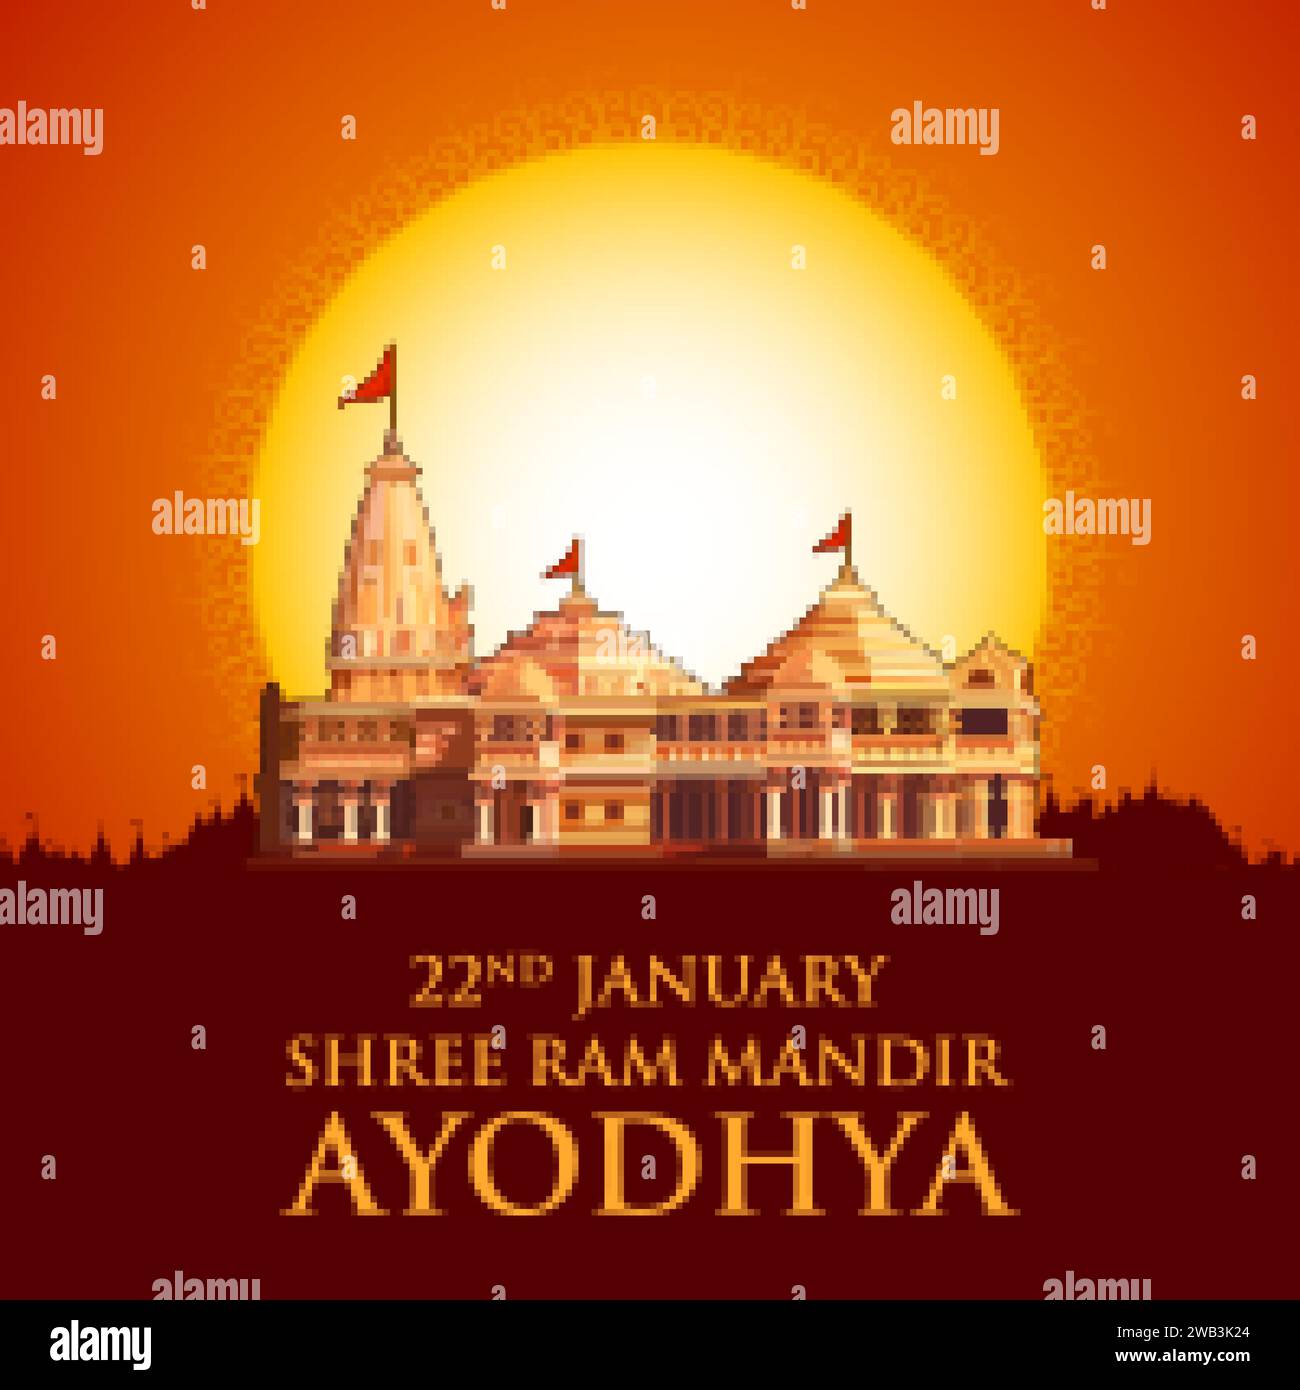 Illustration de l'arrière-plan religieux de Shri RAM Janmbhoomi Teerth Kshetra RAM Mandir Temple à Ayodhya lieu de naissance Lord Rama Illustration de Vecteur